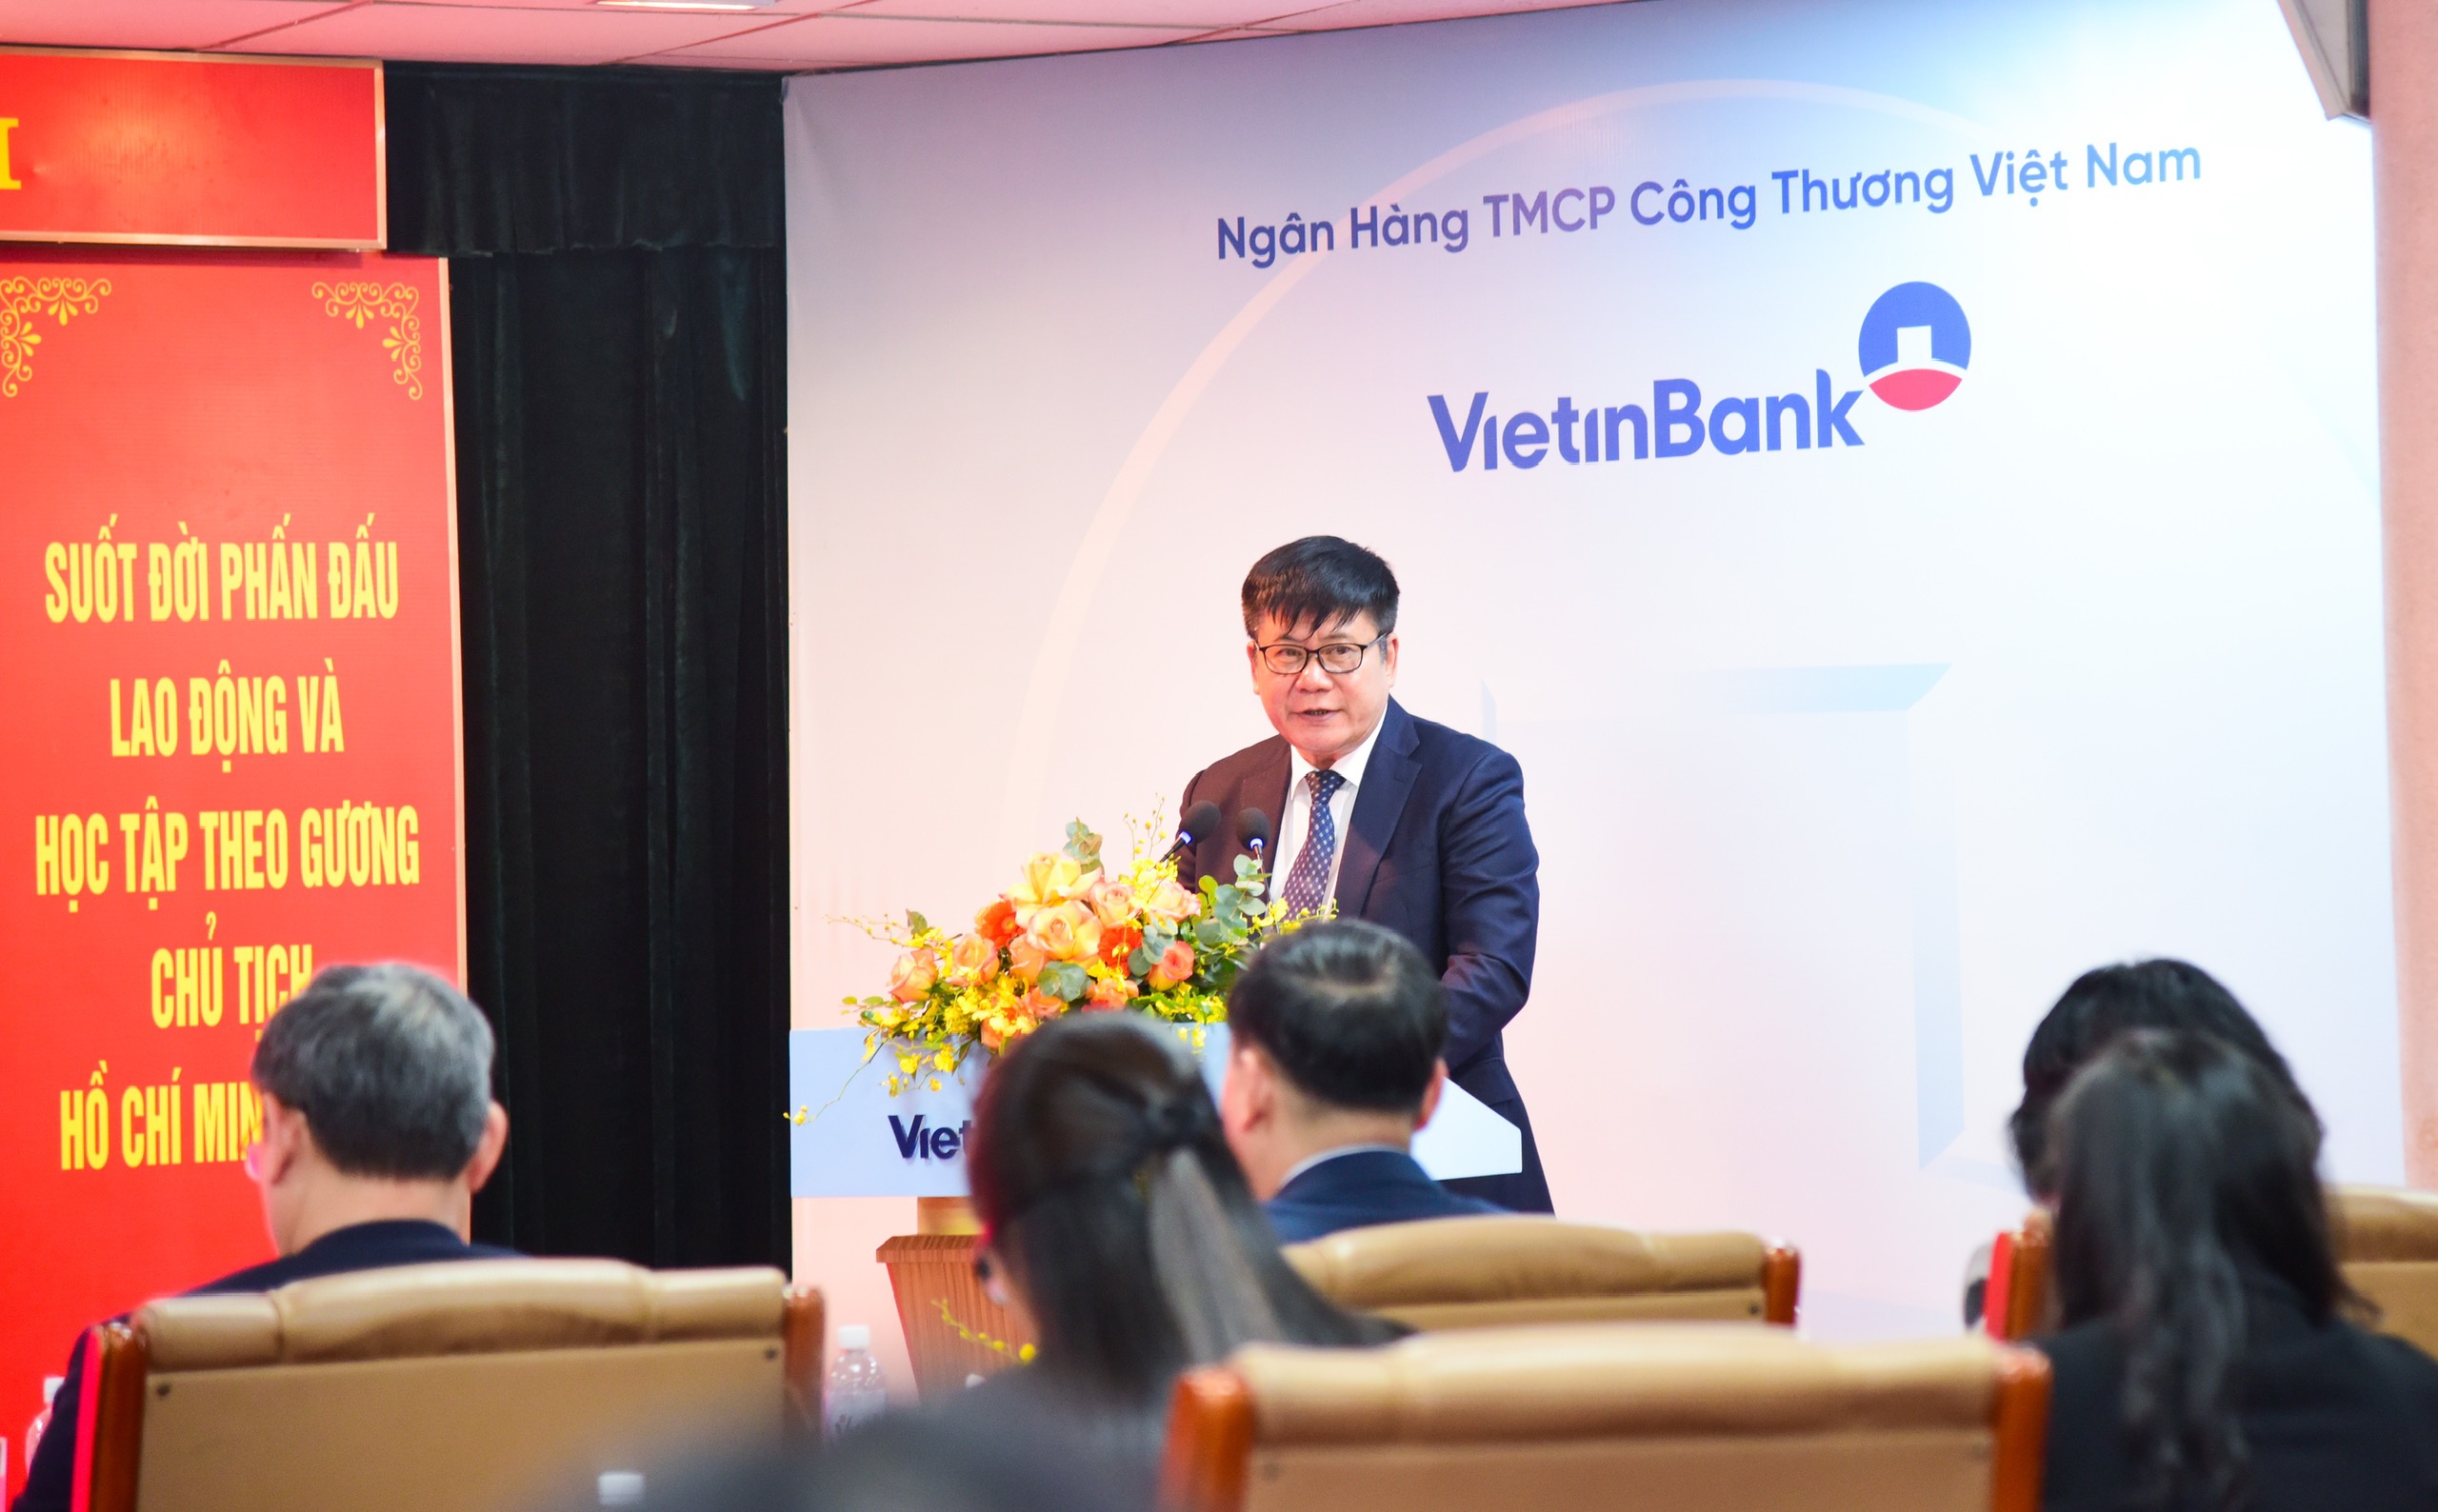 Đồng chí Trần Kiên Cường, Phó Bí thư thường trực Đảng uỷ Ngân hàng TMCP Công thương Việt Nam phát biểu tại buổi Lễ